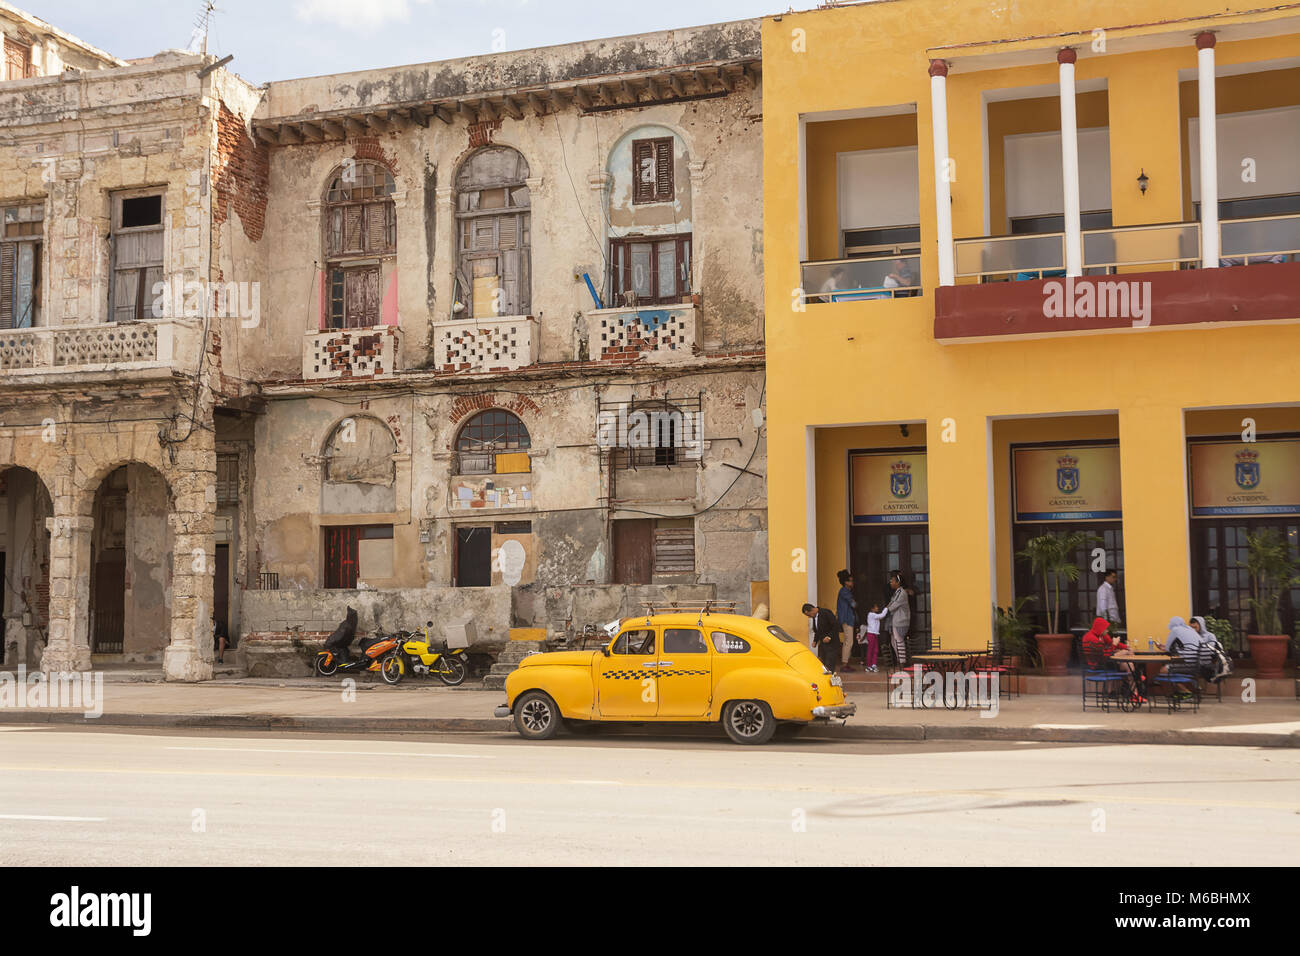 La Habana, Cuba - Diciembre 11, 2017: el contraste entre edificios renovados y decadente en el malecón de La Habana. Foto de stock